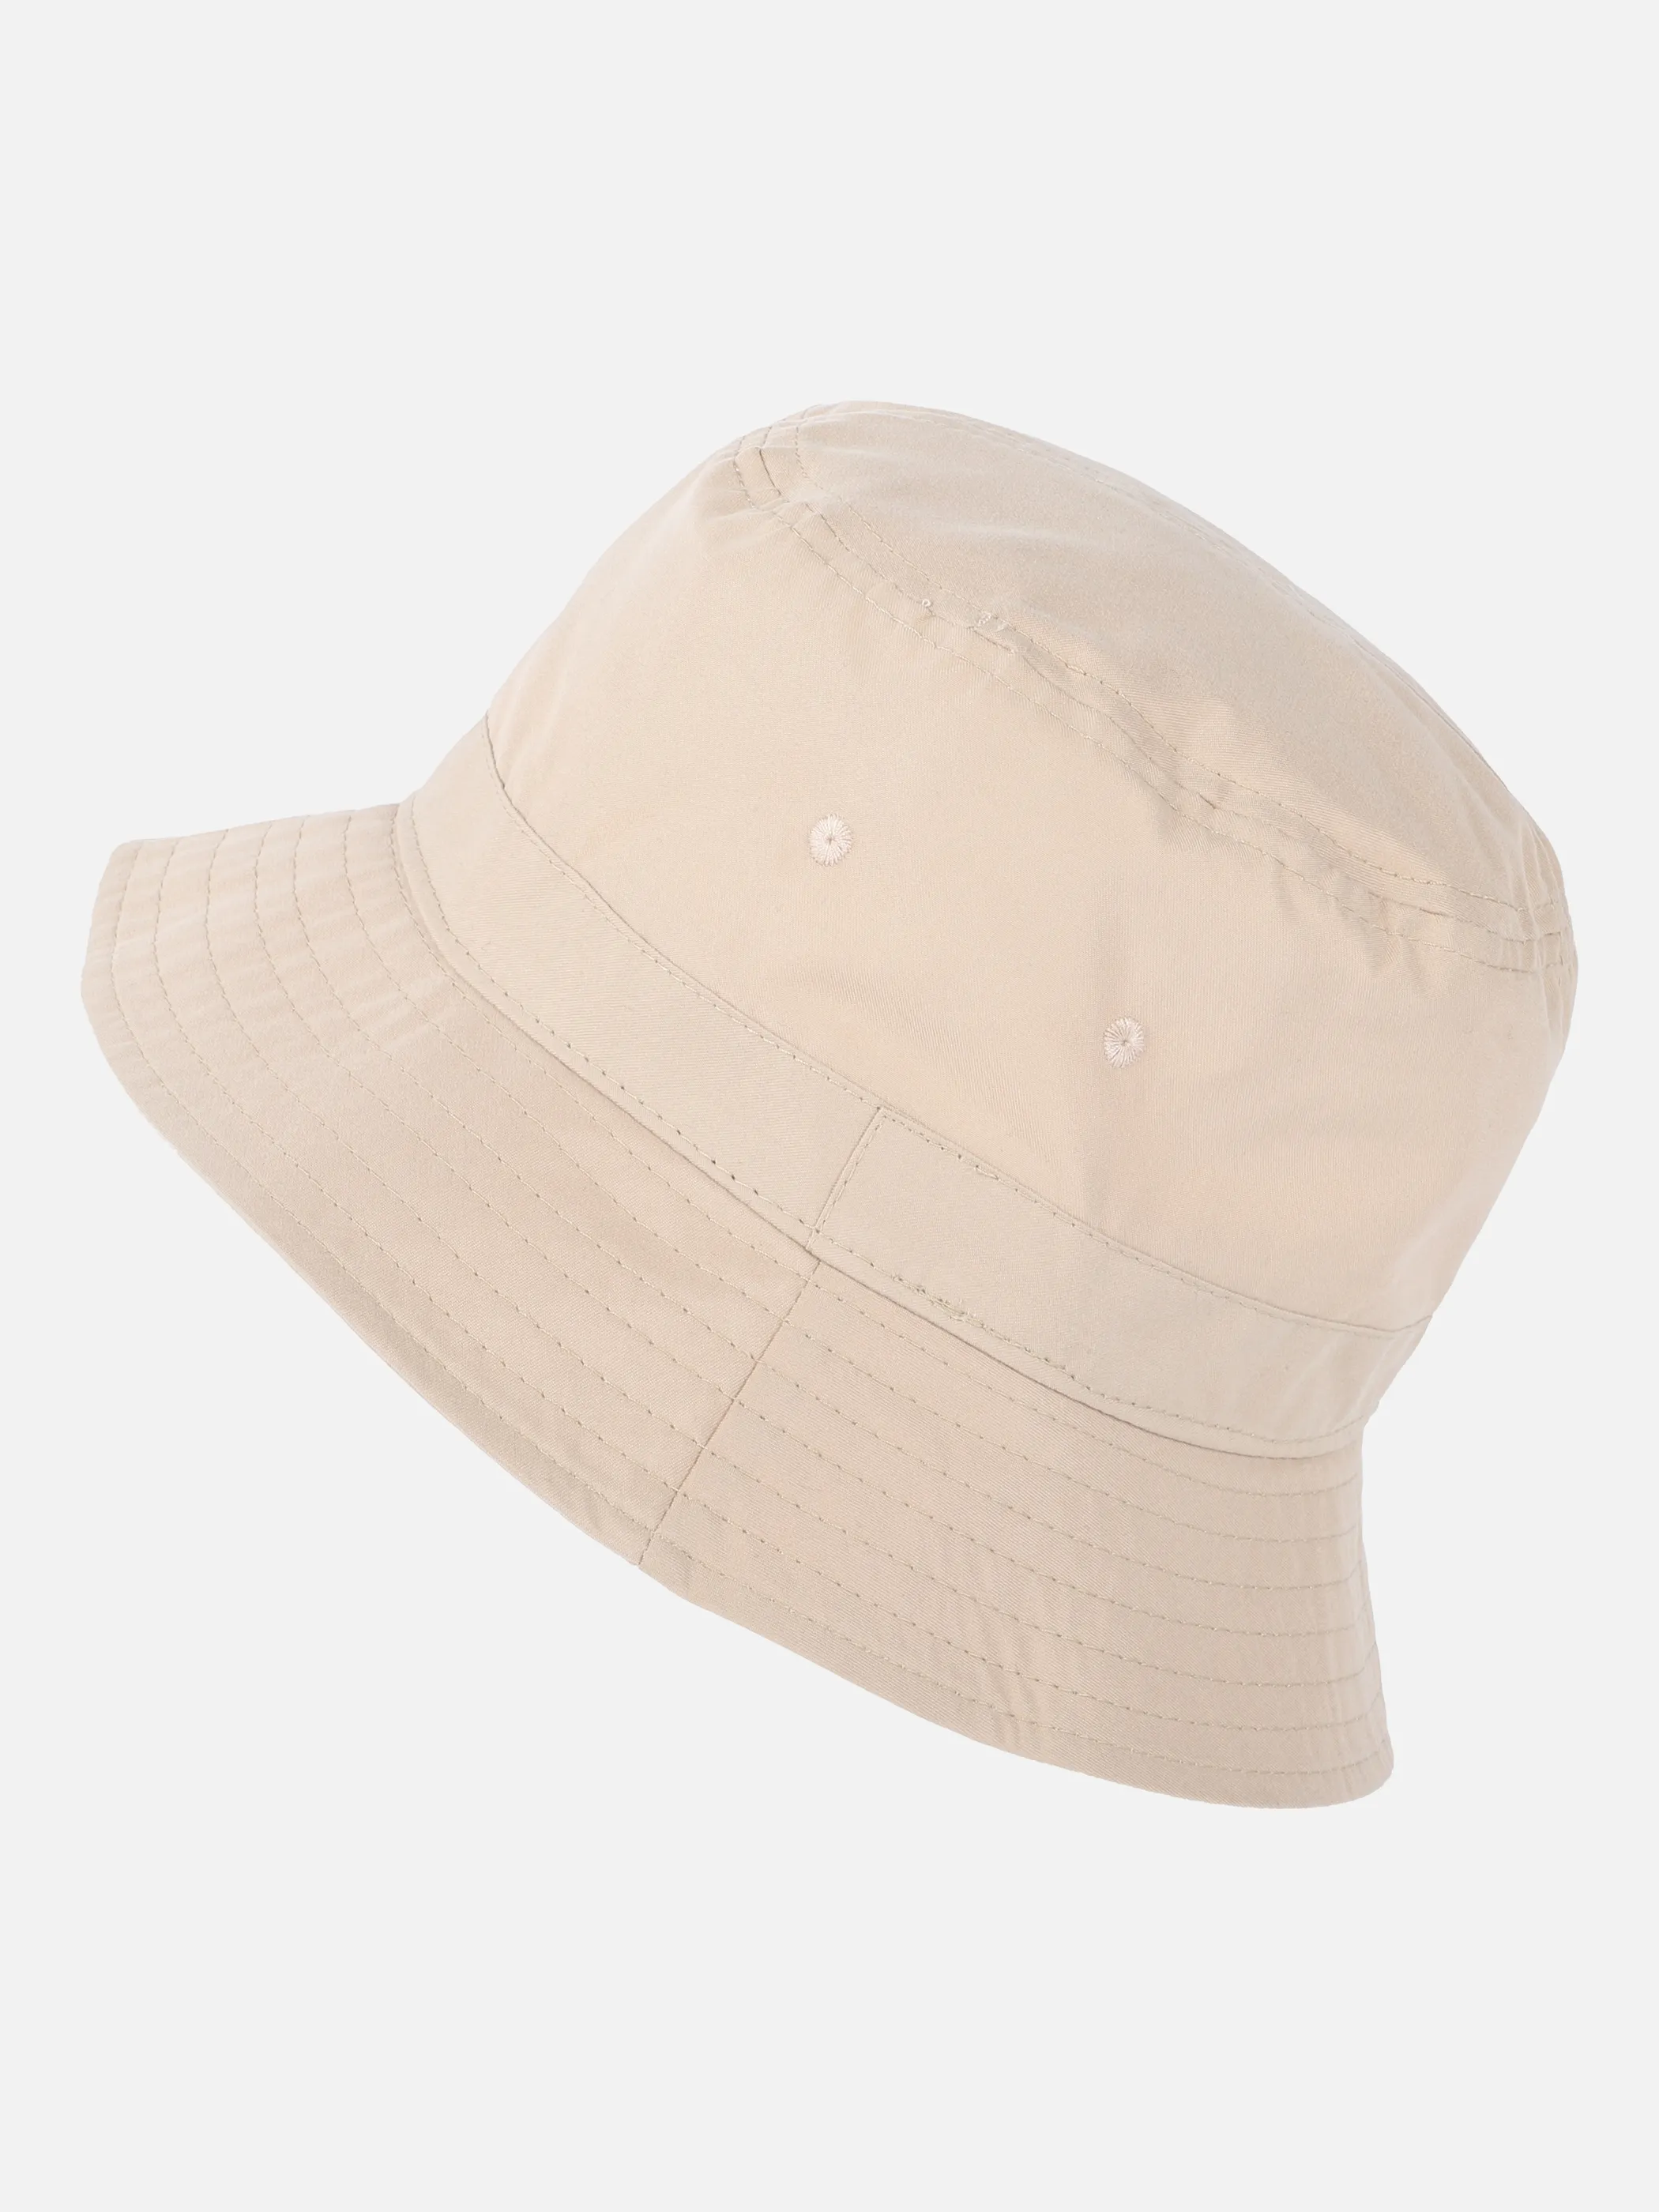 Mützen, Caps & Hüte für Herren jetzt günstig online kaufen | AWG Mode